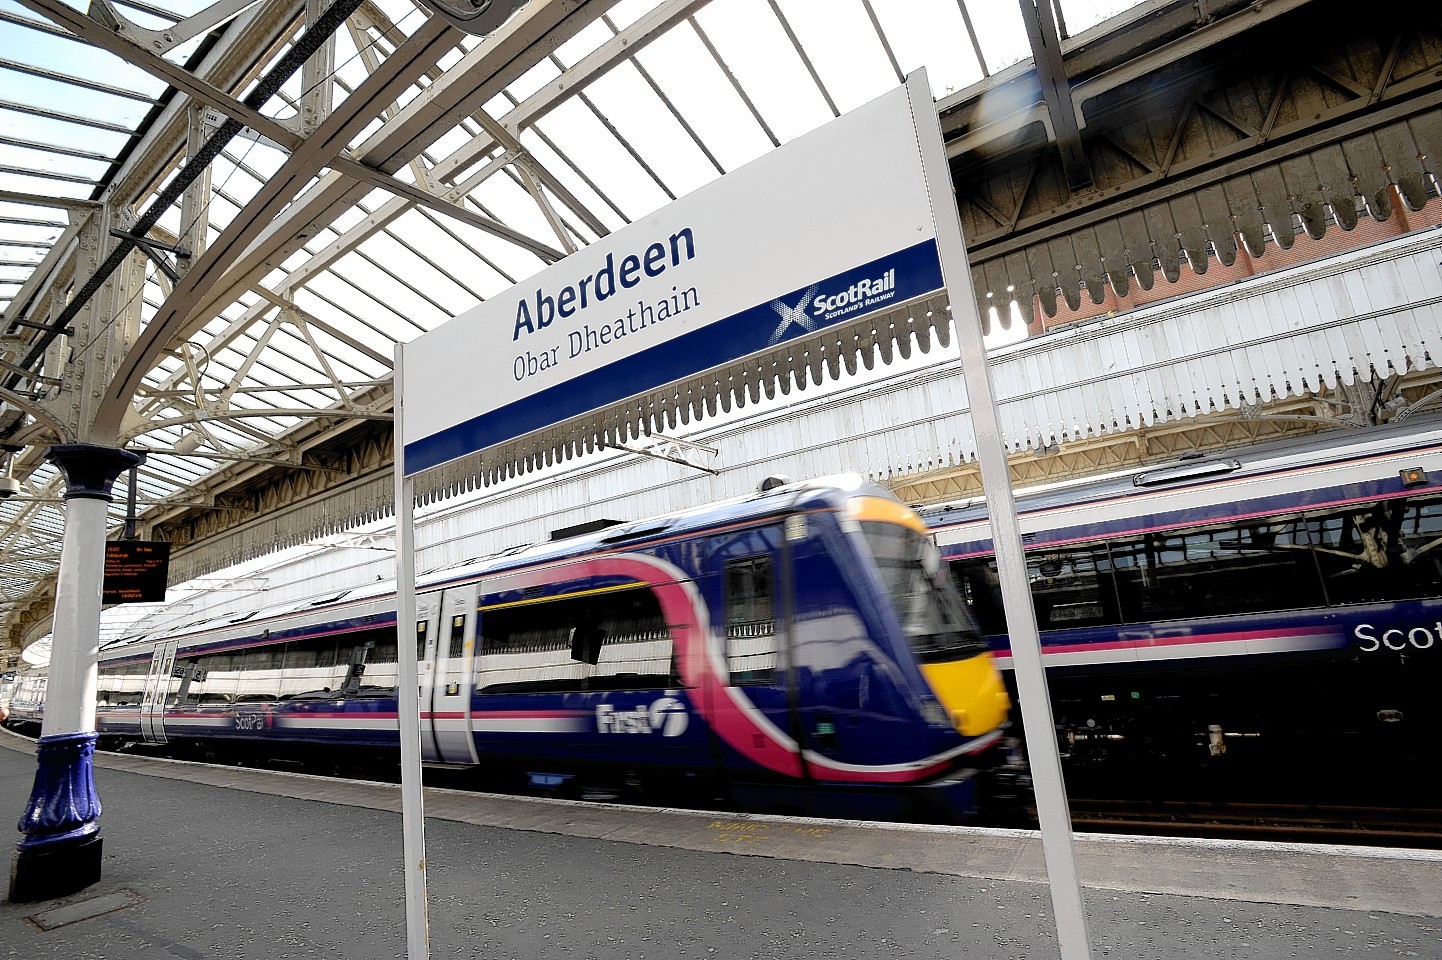 Aberdeen Railway Station